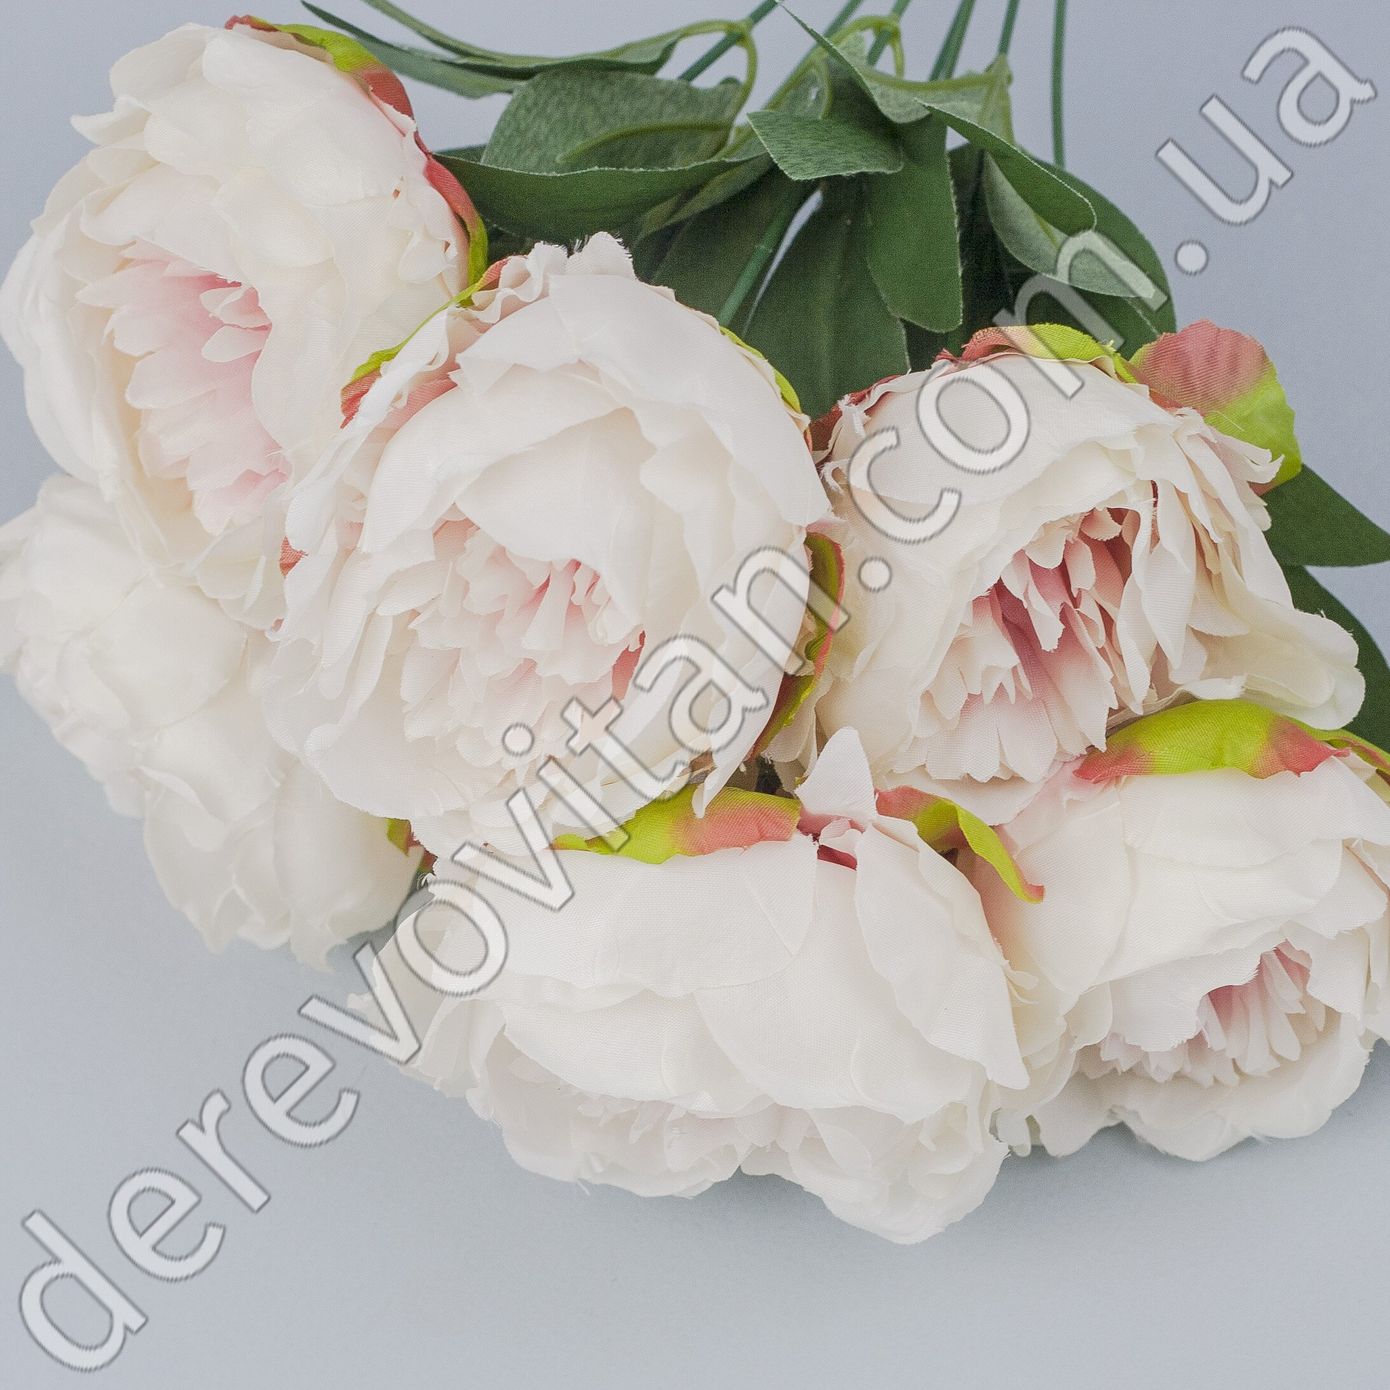 Пионы искусственные бело-розовые на ножке, 7 голов, 25×43 см